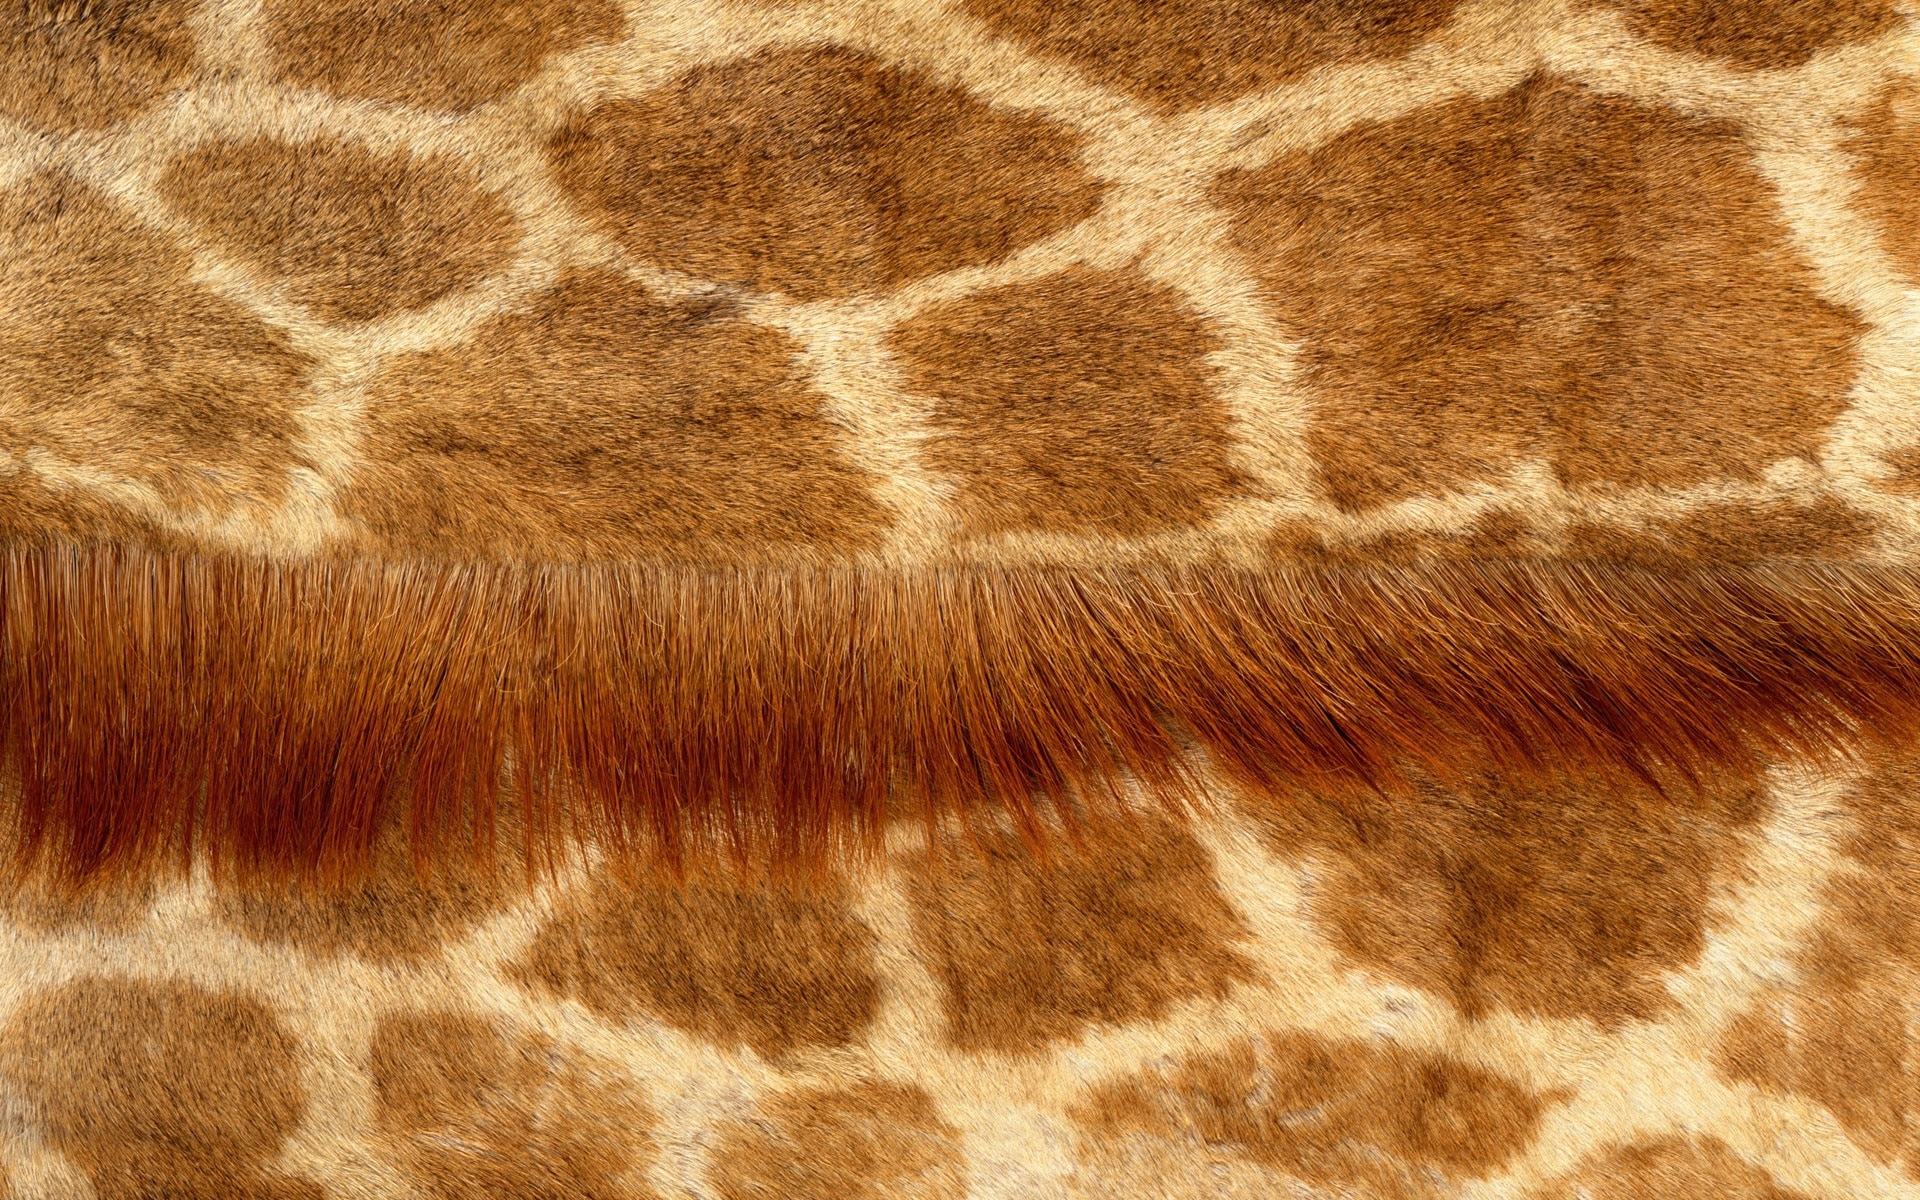 giraffe coat